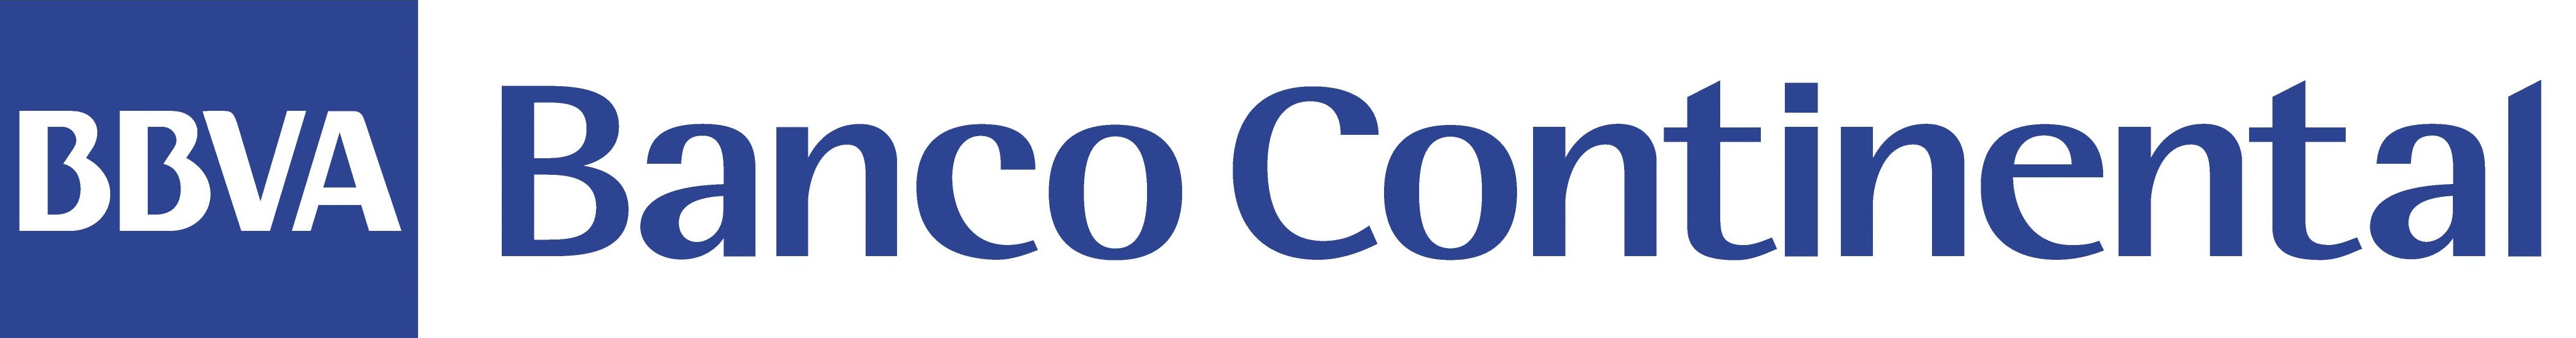 BBVA Continental Logo photo - 1